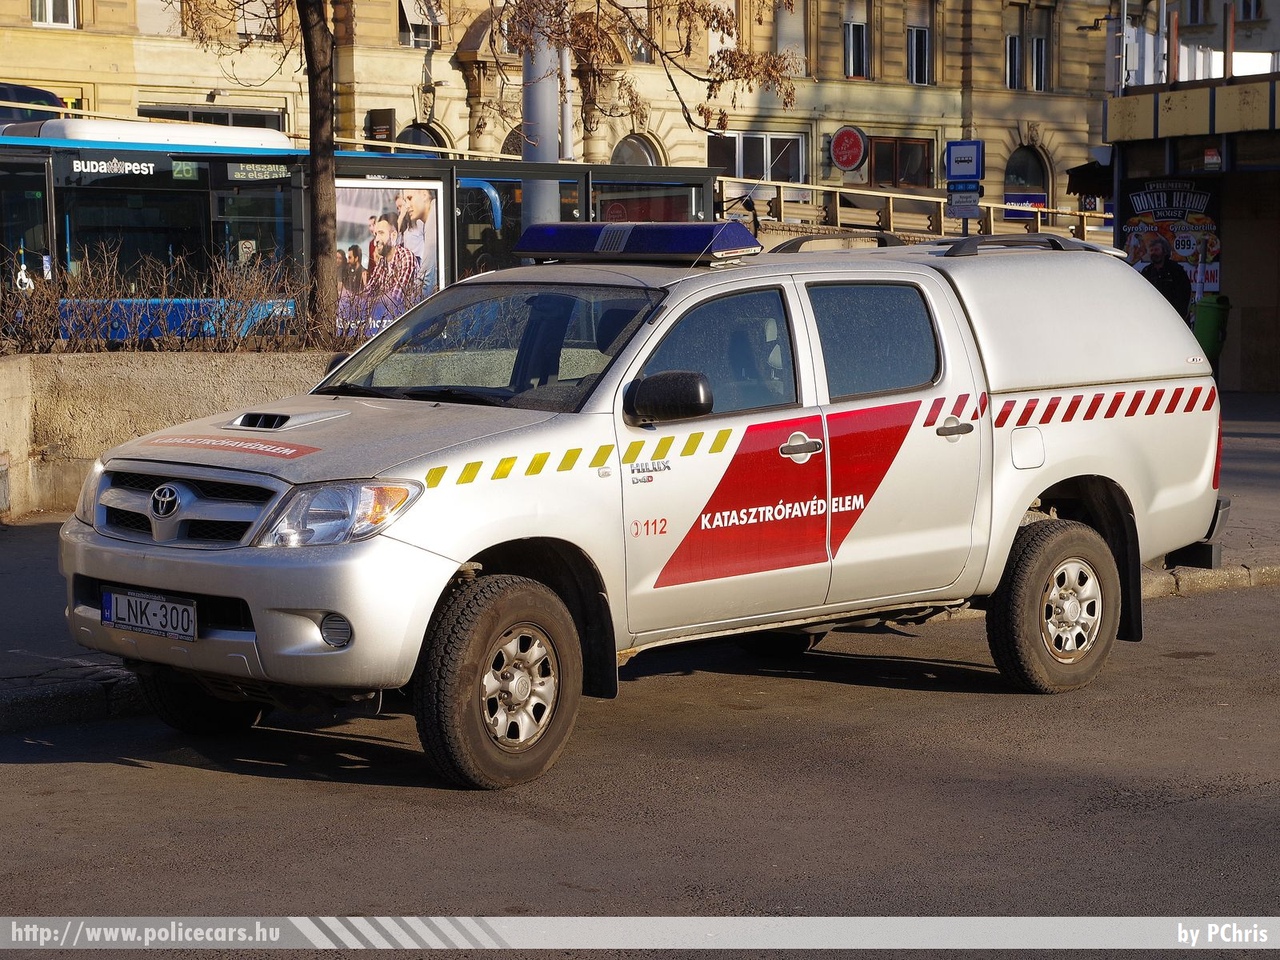 Toyota Hilux D4-D, Észak-budai Katasztrófavédelmi Kirendeltség, fotó: PChris
Keywords: tűzoltóautó tűzoltó tűzoltóság magyar Magyarország katasztrófavédelem fire firetruck Hungary hungarian LNK-300